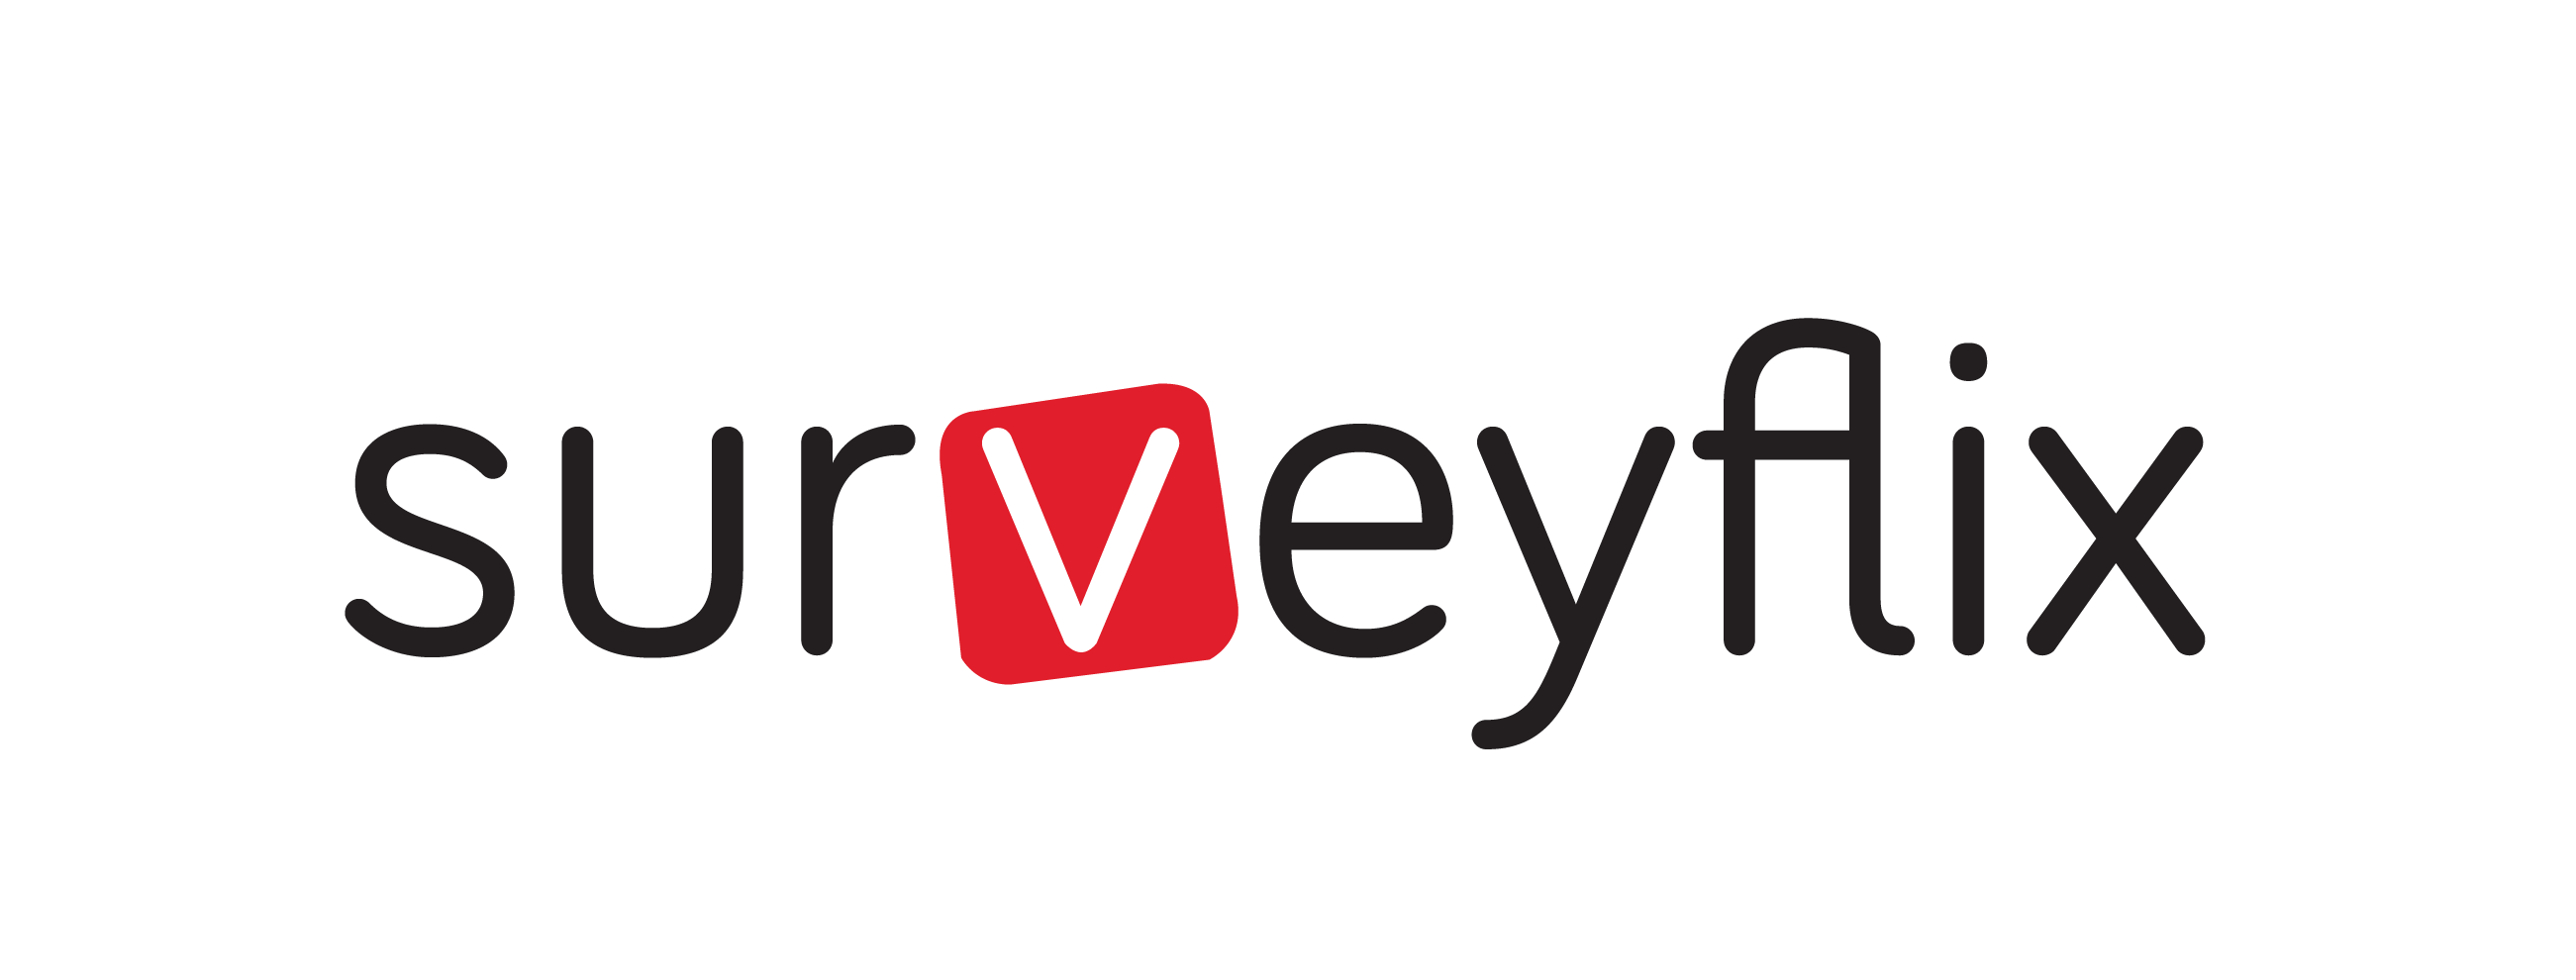 surveyflix logo-02